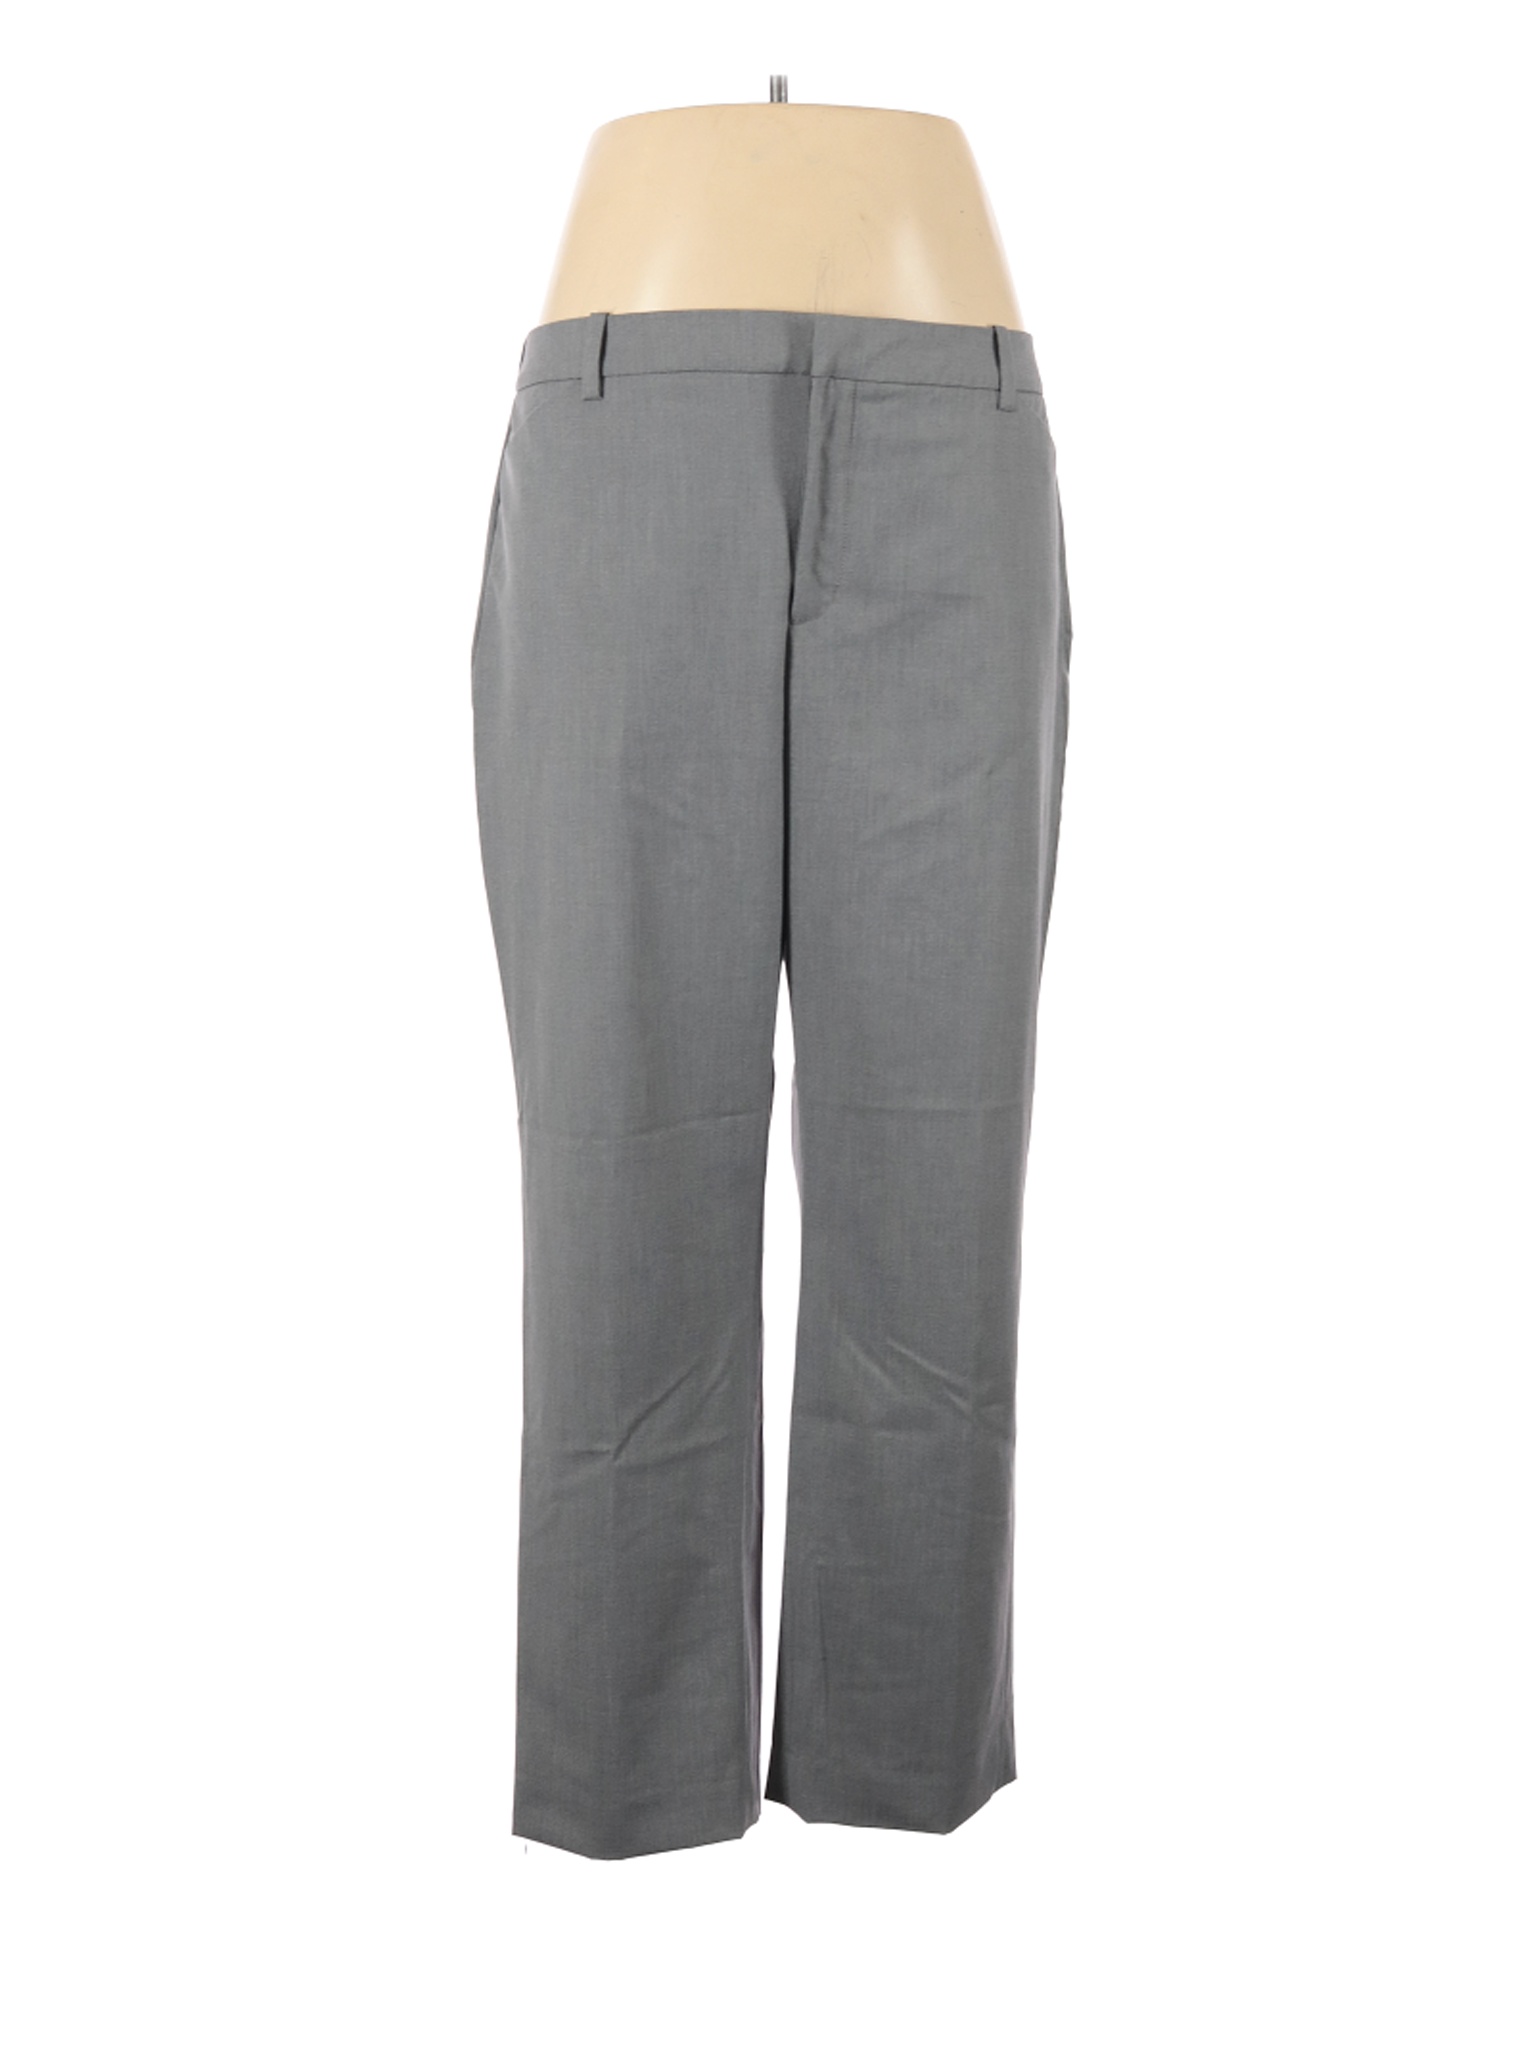 Coldwater Creek Women Gray Dress Pants 10 Petites | eBay